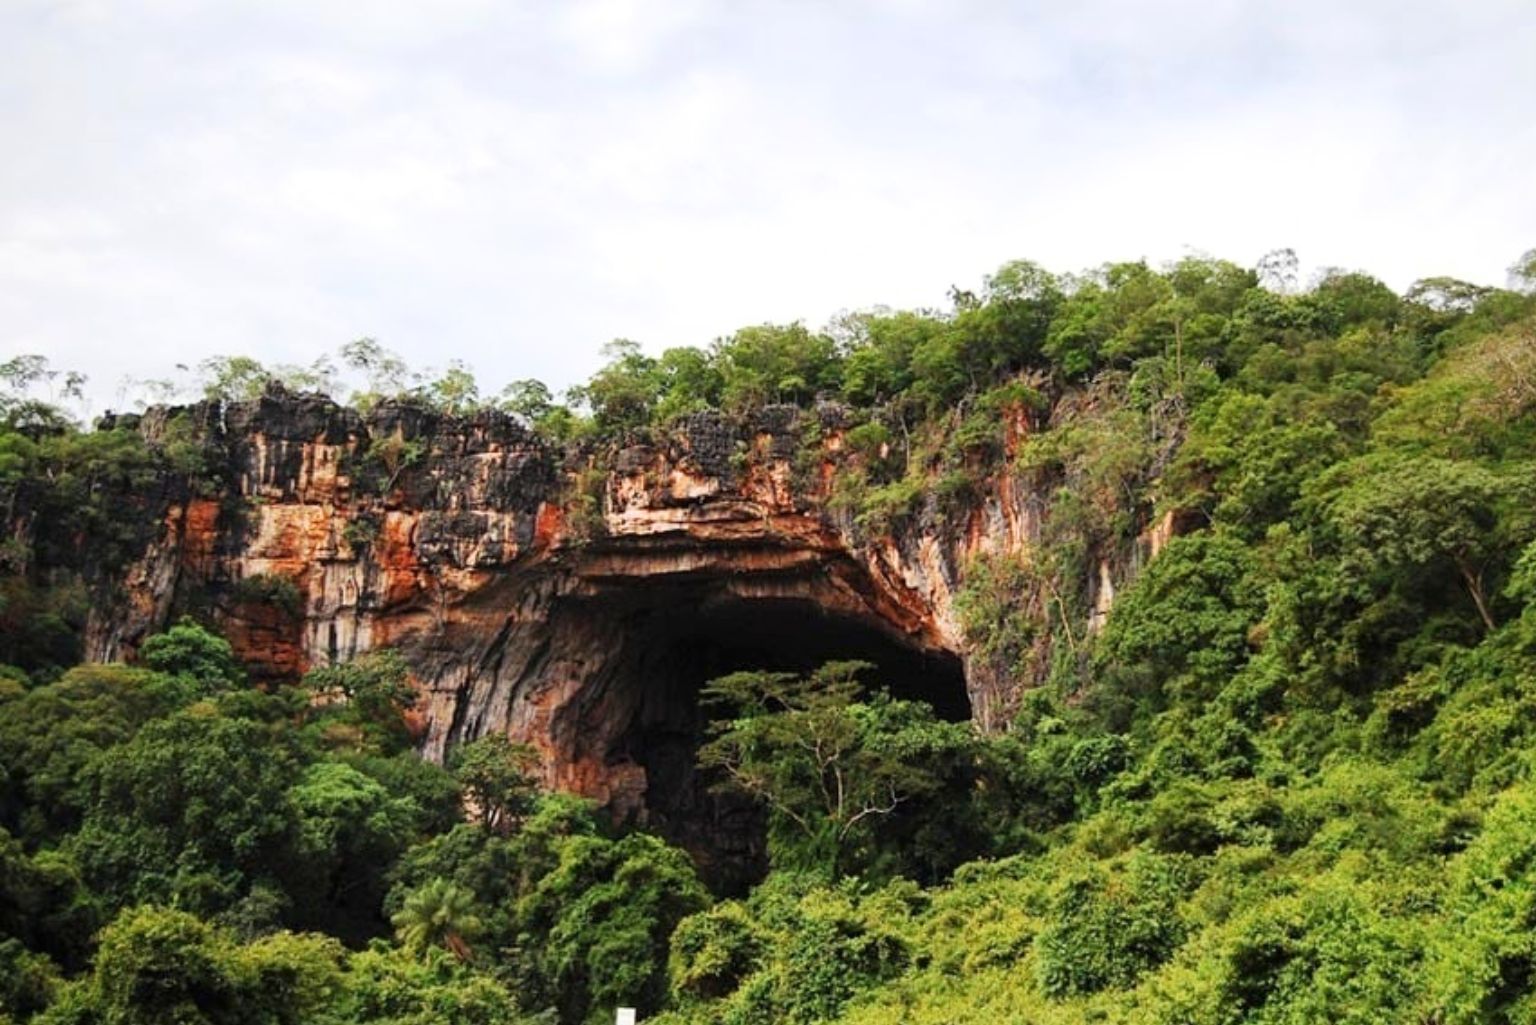 Turistas Desaparecem Após Entrar Em Caverna Em Parque De Goiás